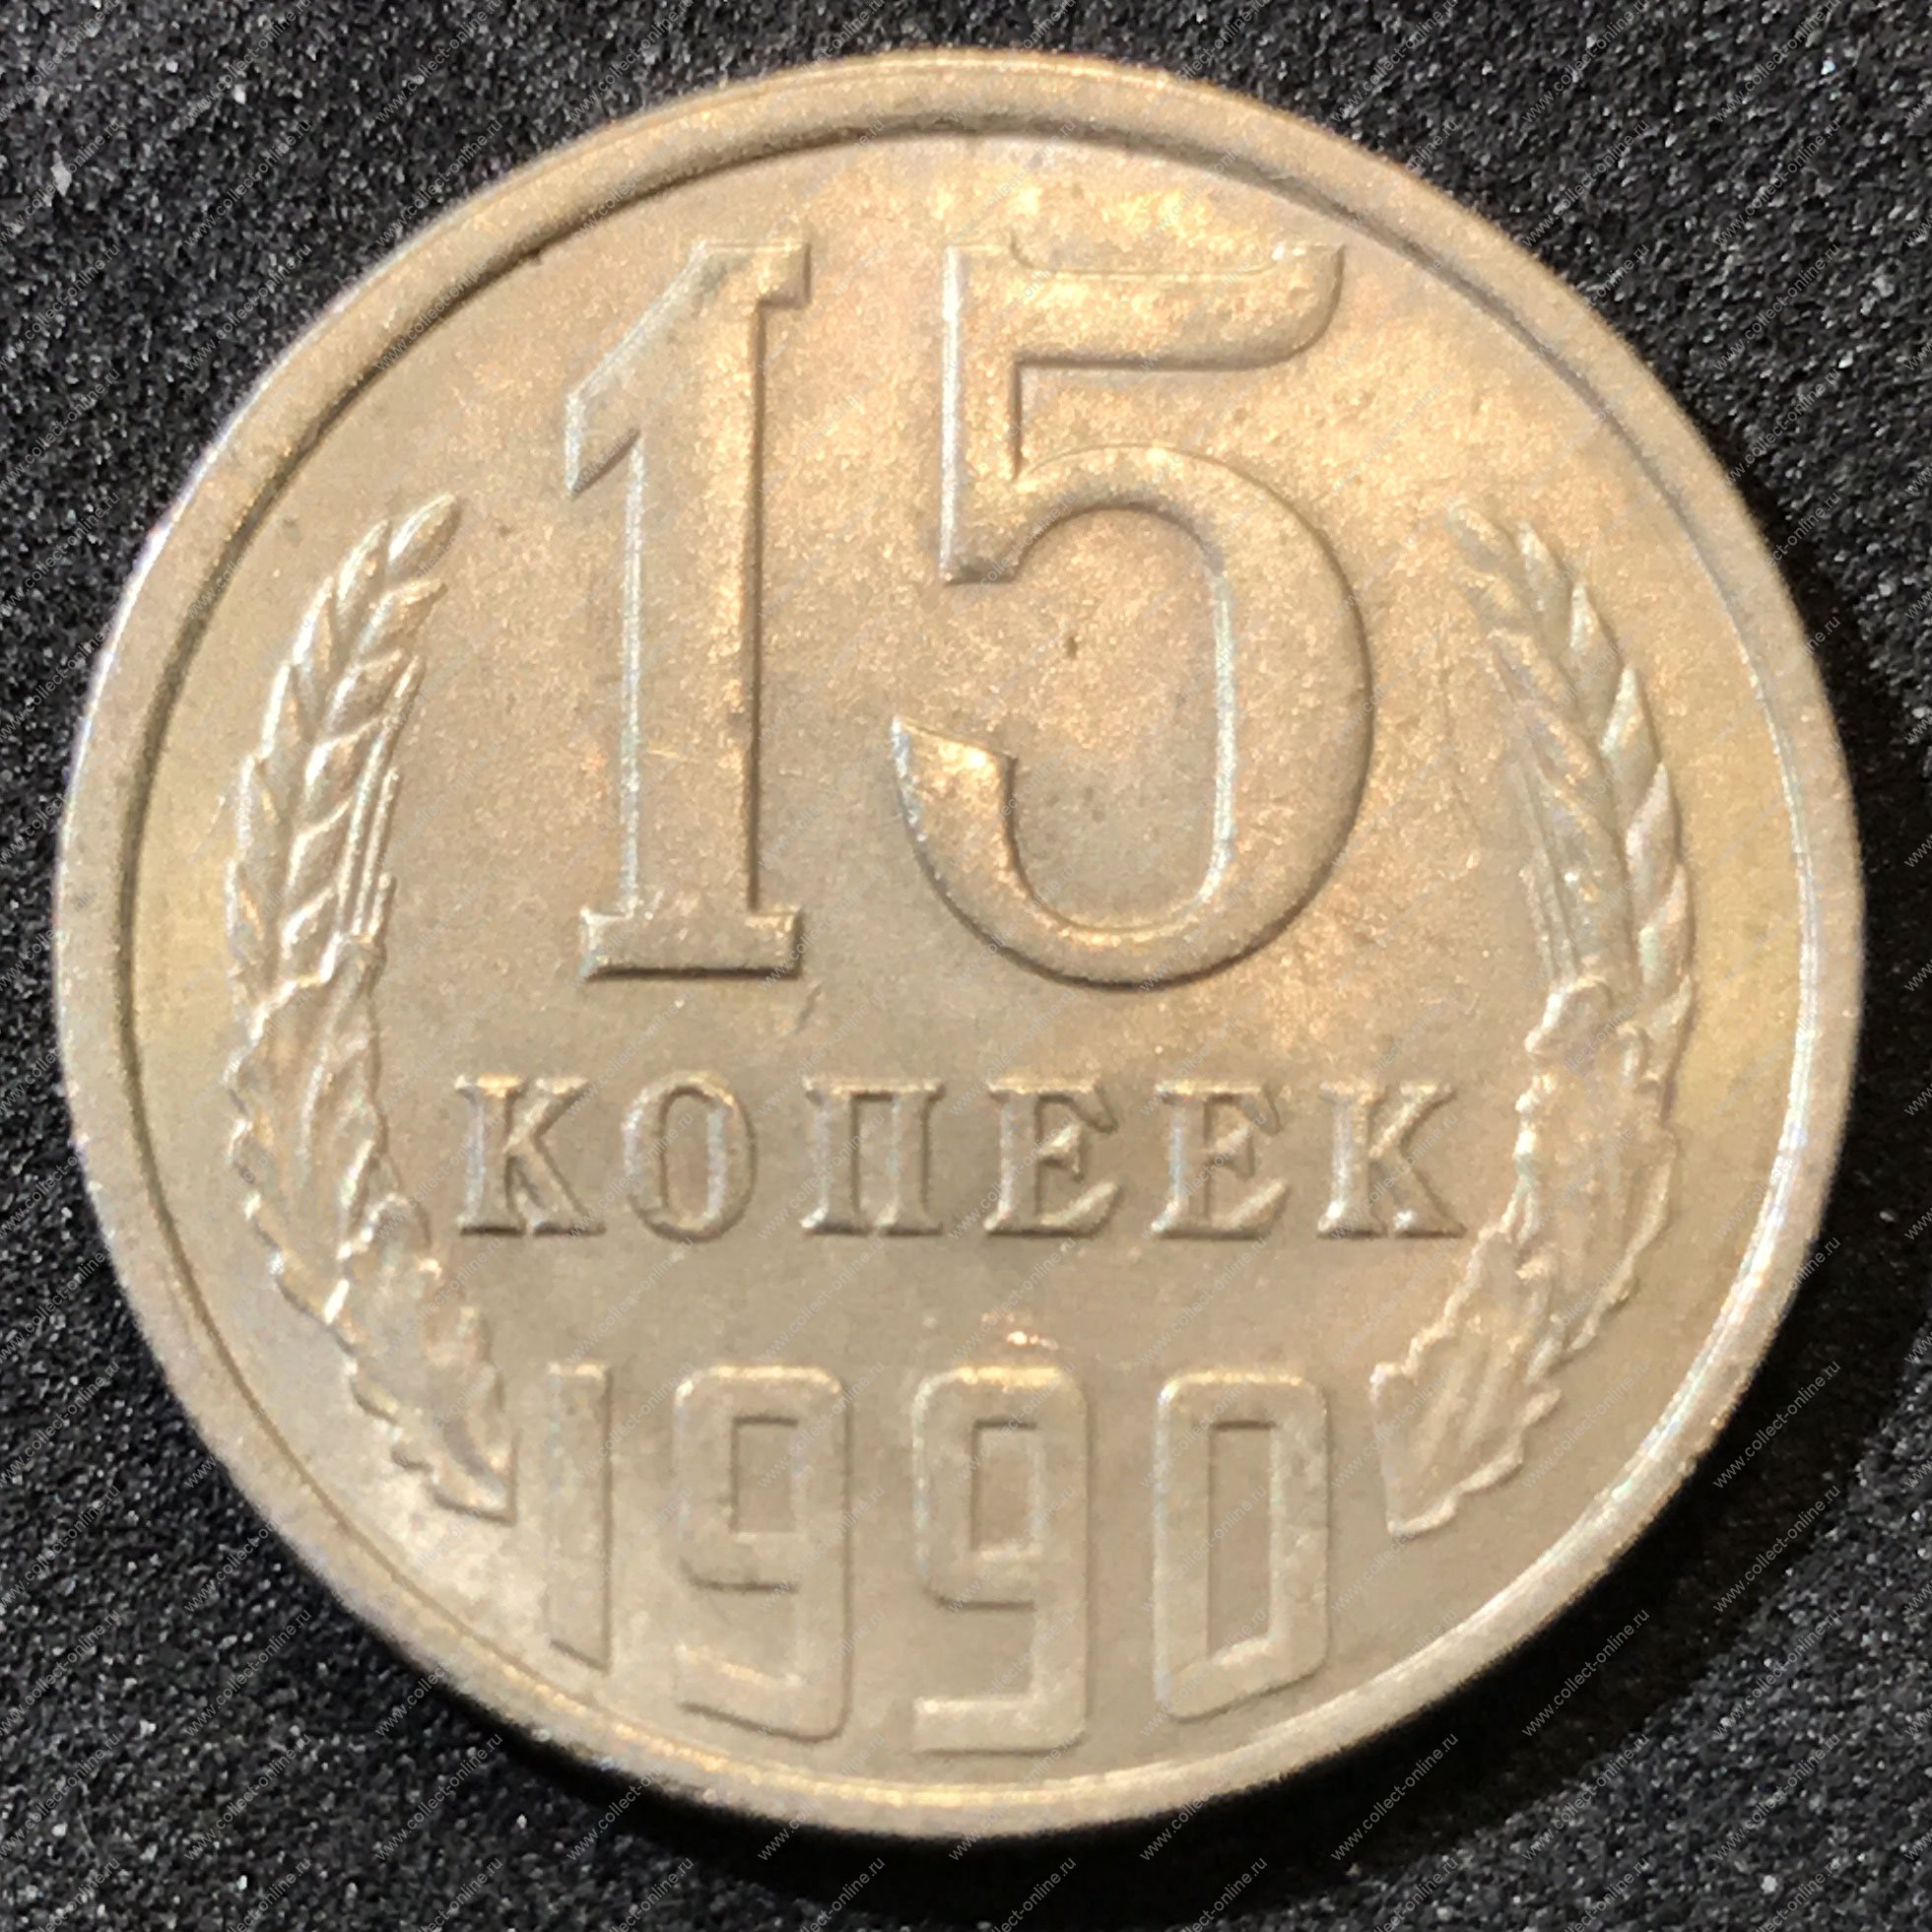 15 копеек 1961